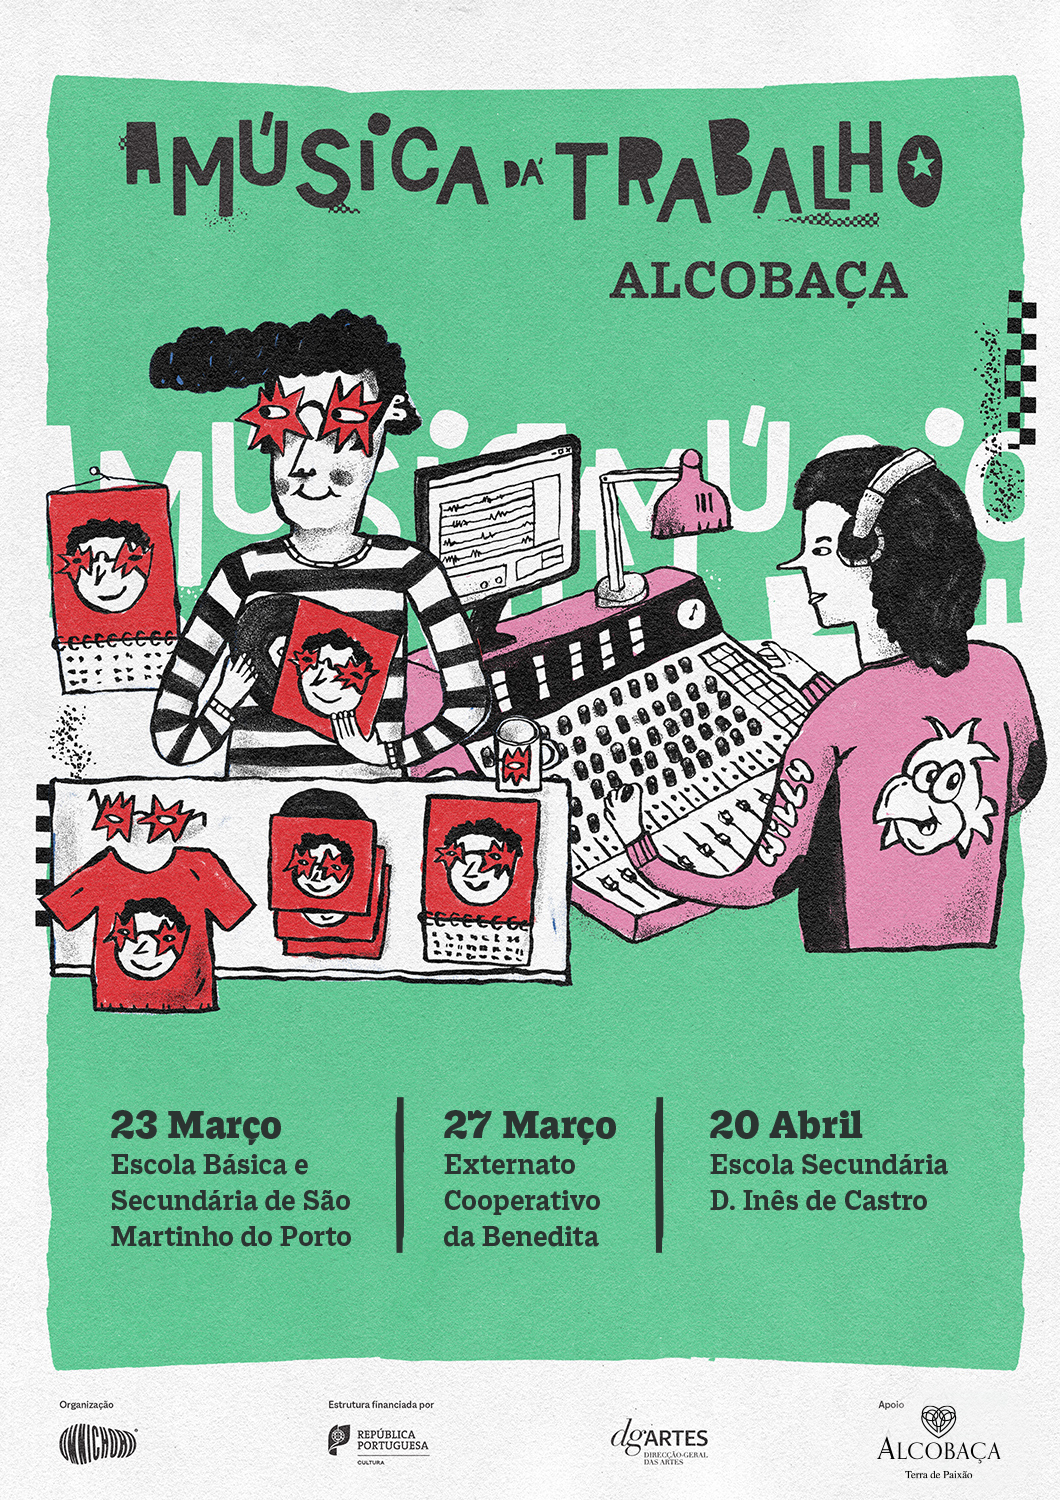 cartaz do projeto "A música dá trabalho" com sessões em Alcobaça